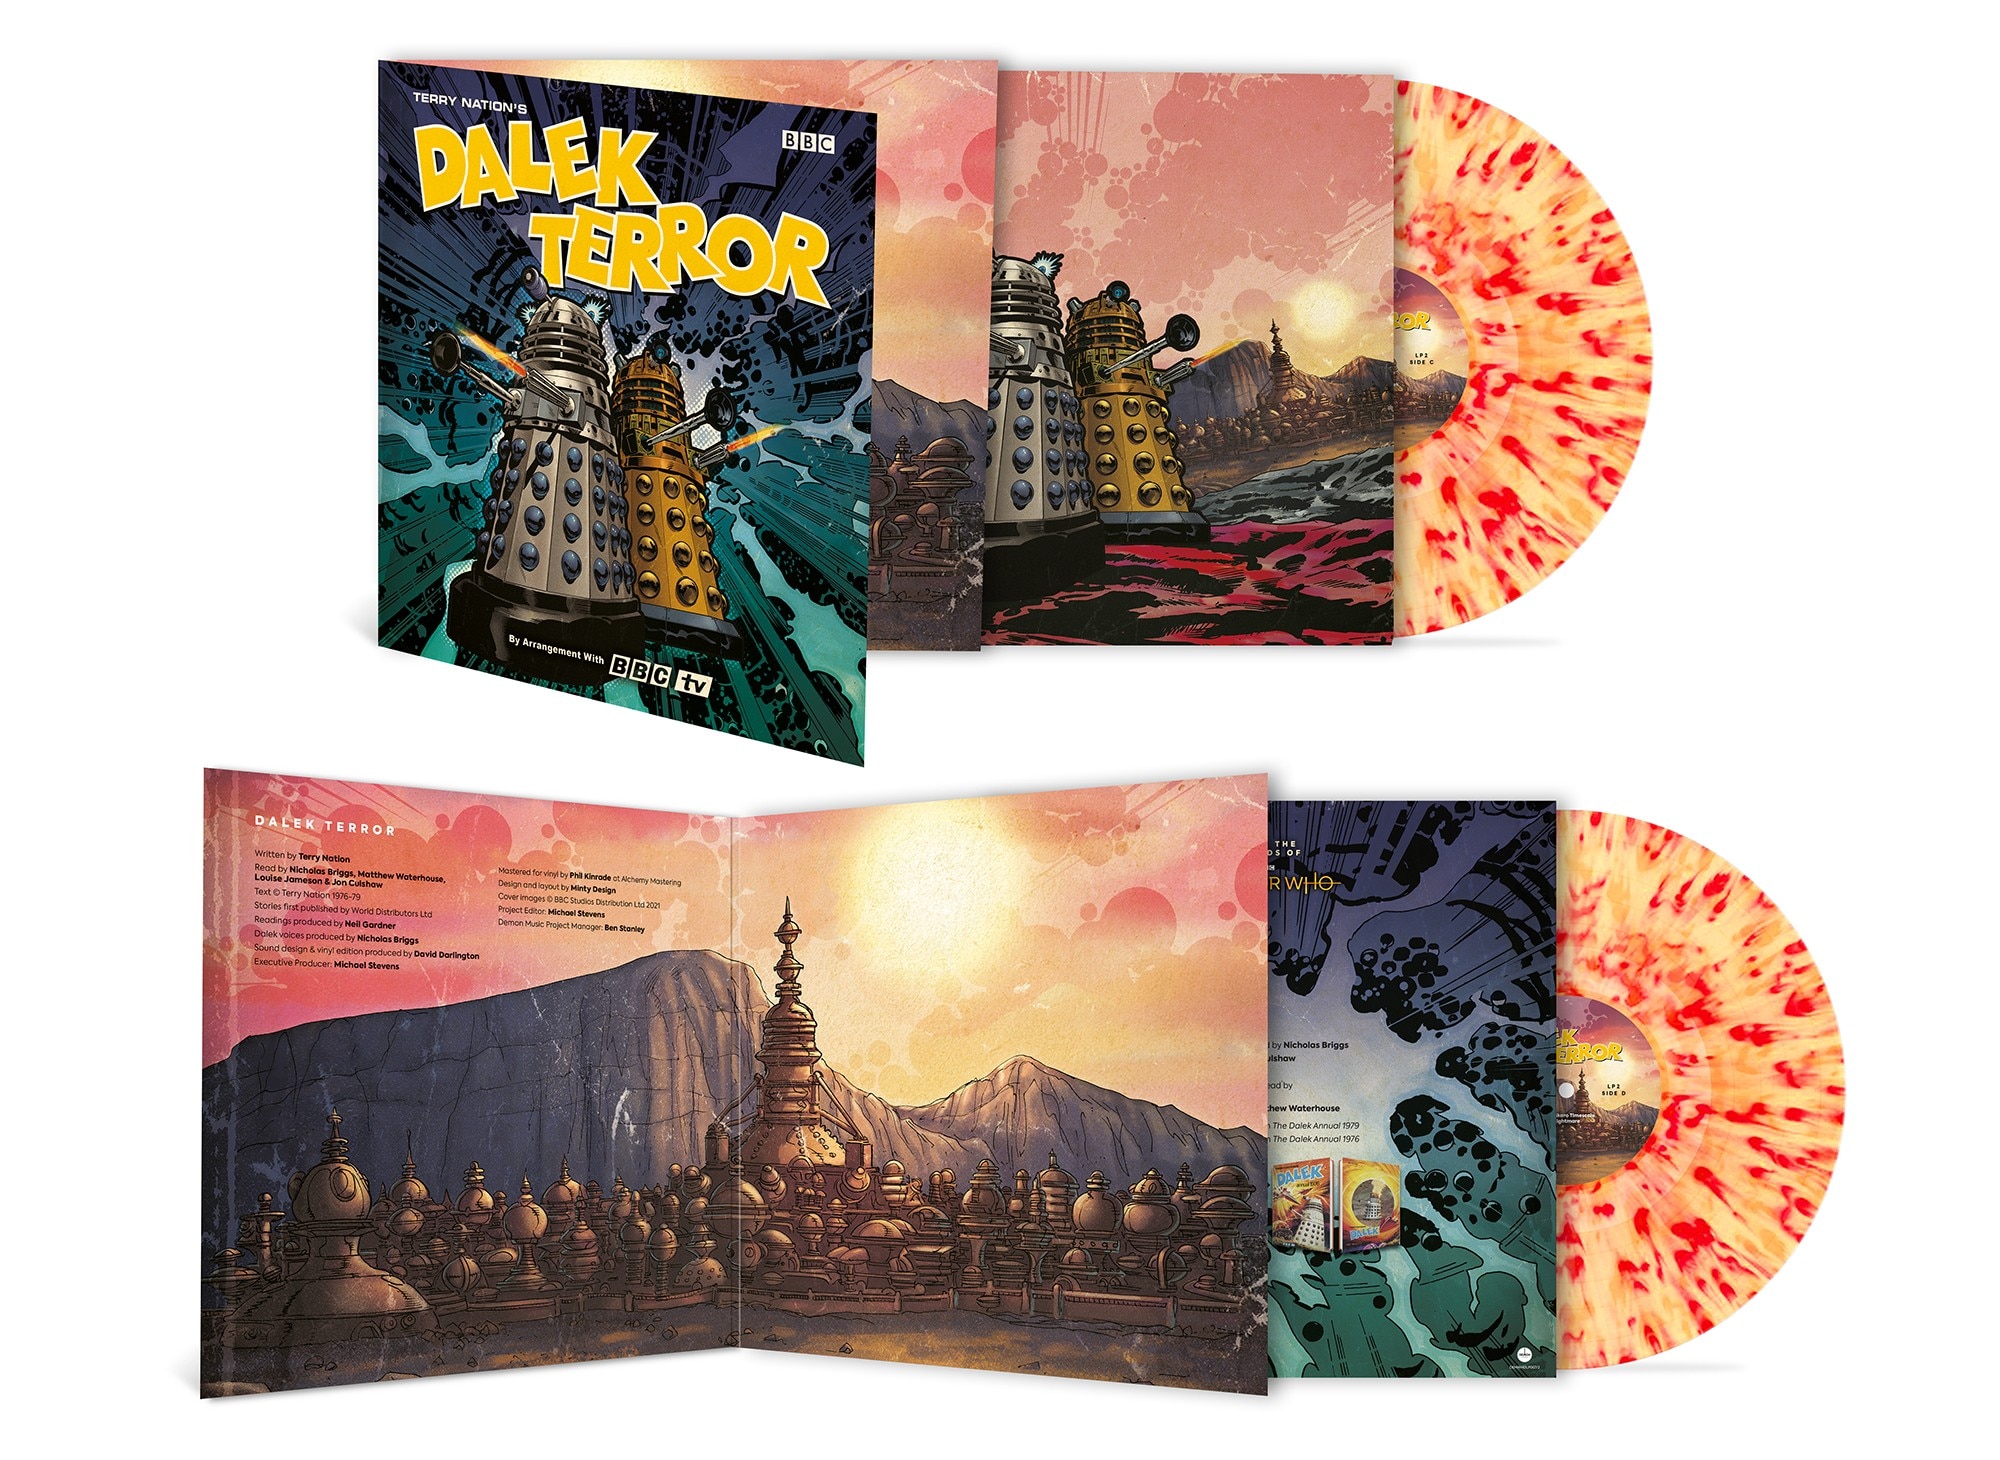 Dalek Terror vinyl and sleeve